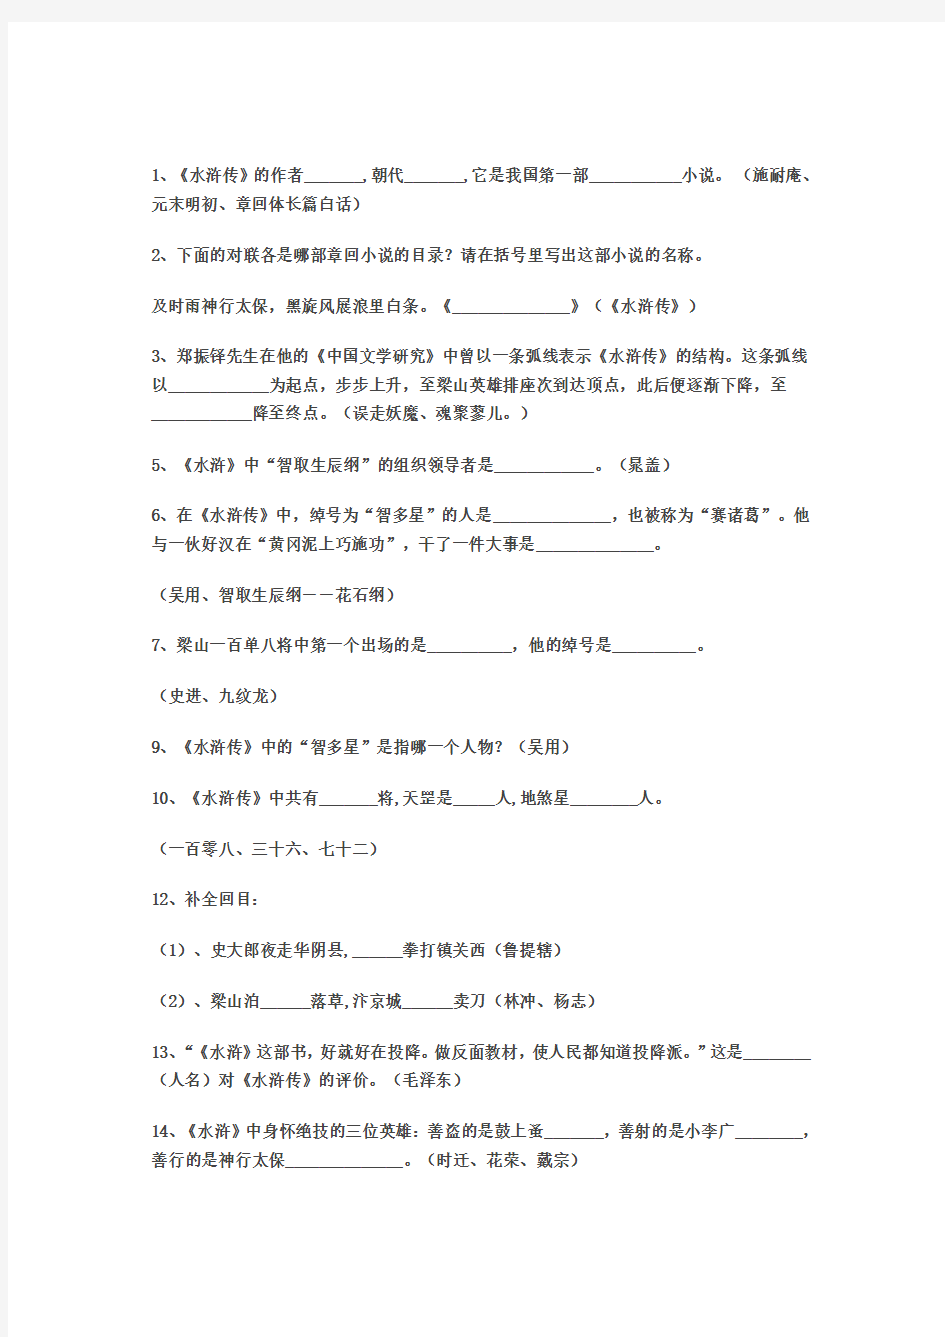 三份综合水浒传练习题及答案2013